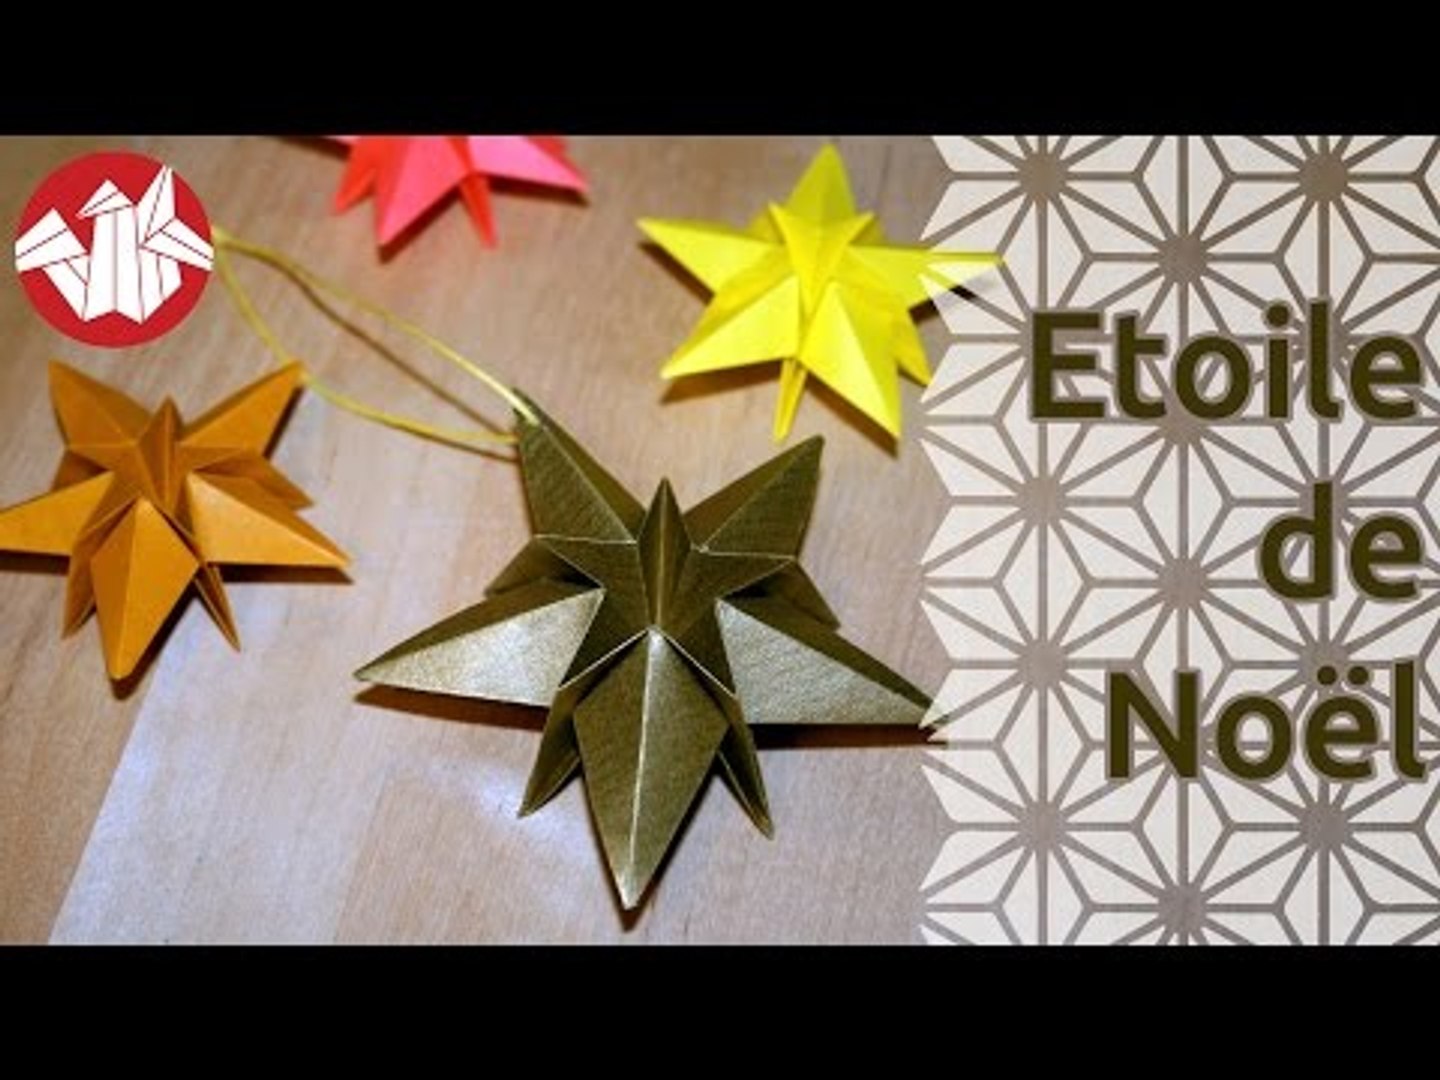 TUTO - Origami d'une étoile à quatre branches (éventuellement dédoublée) -  Vidéo Dailymotion